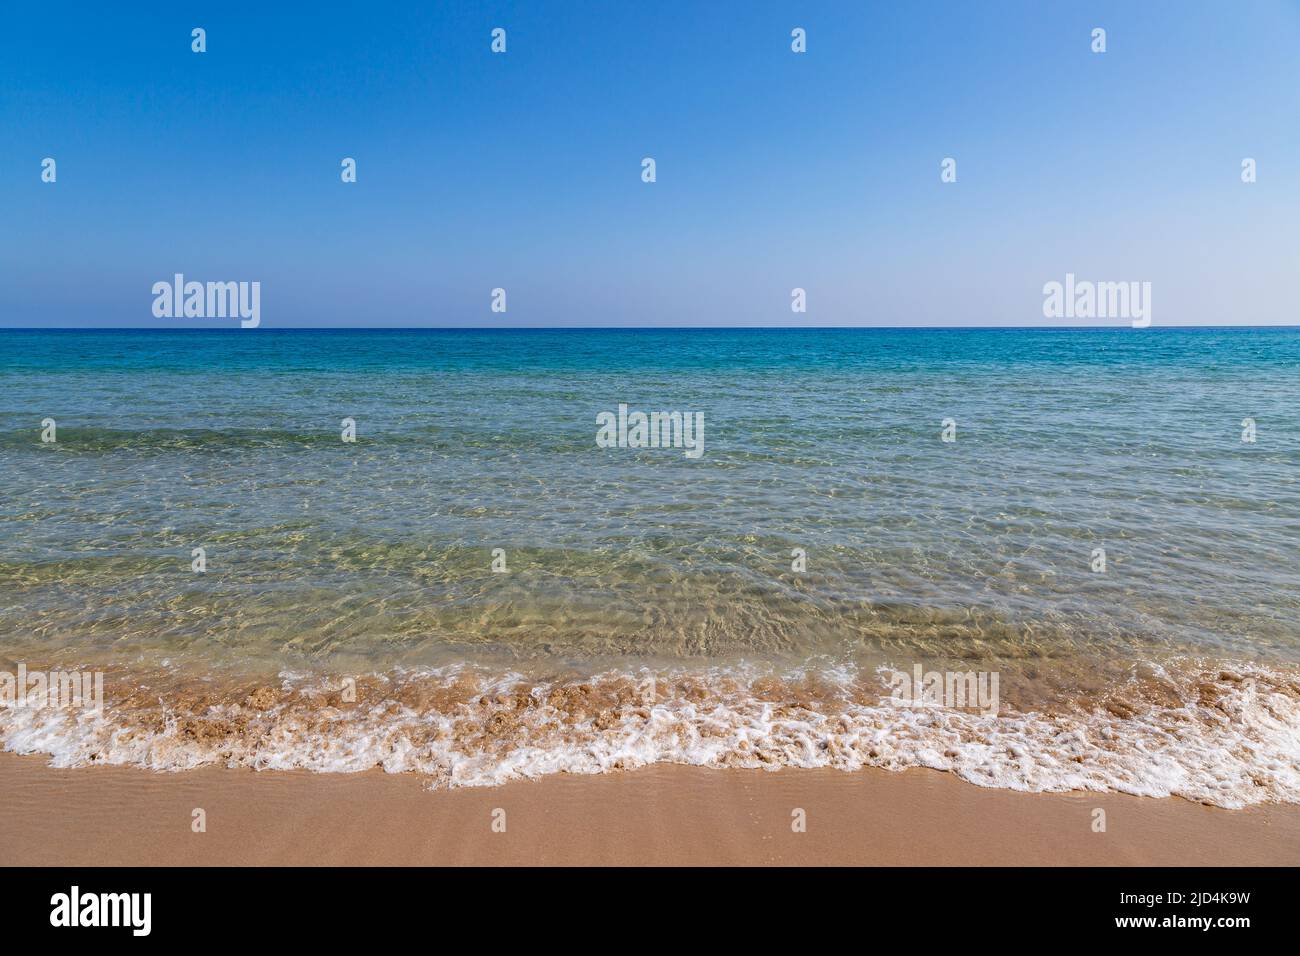 Si affaccia sull'oceano limpido, presso la spiaggia dorata sulla penisola di Karpaz, Cipro Foto Stock